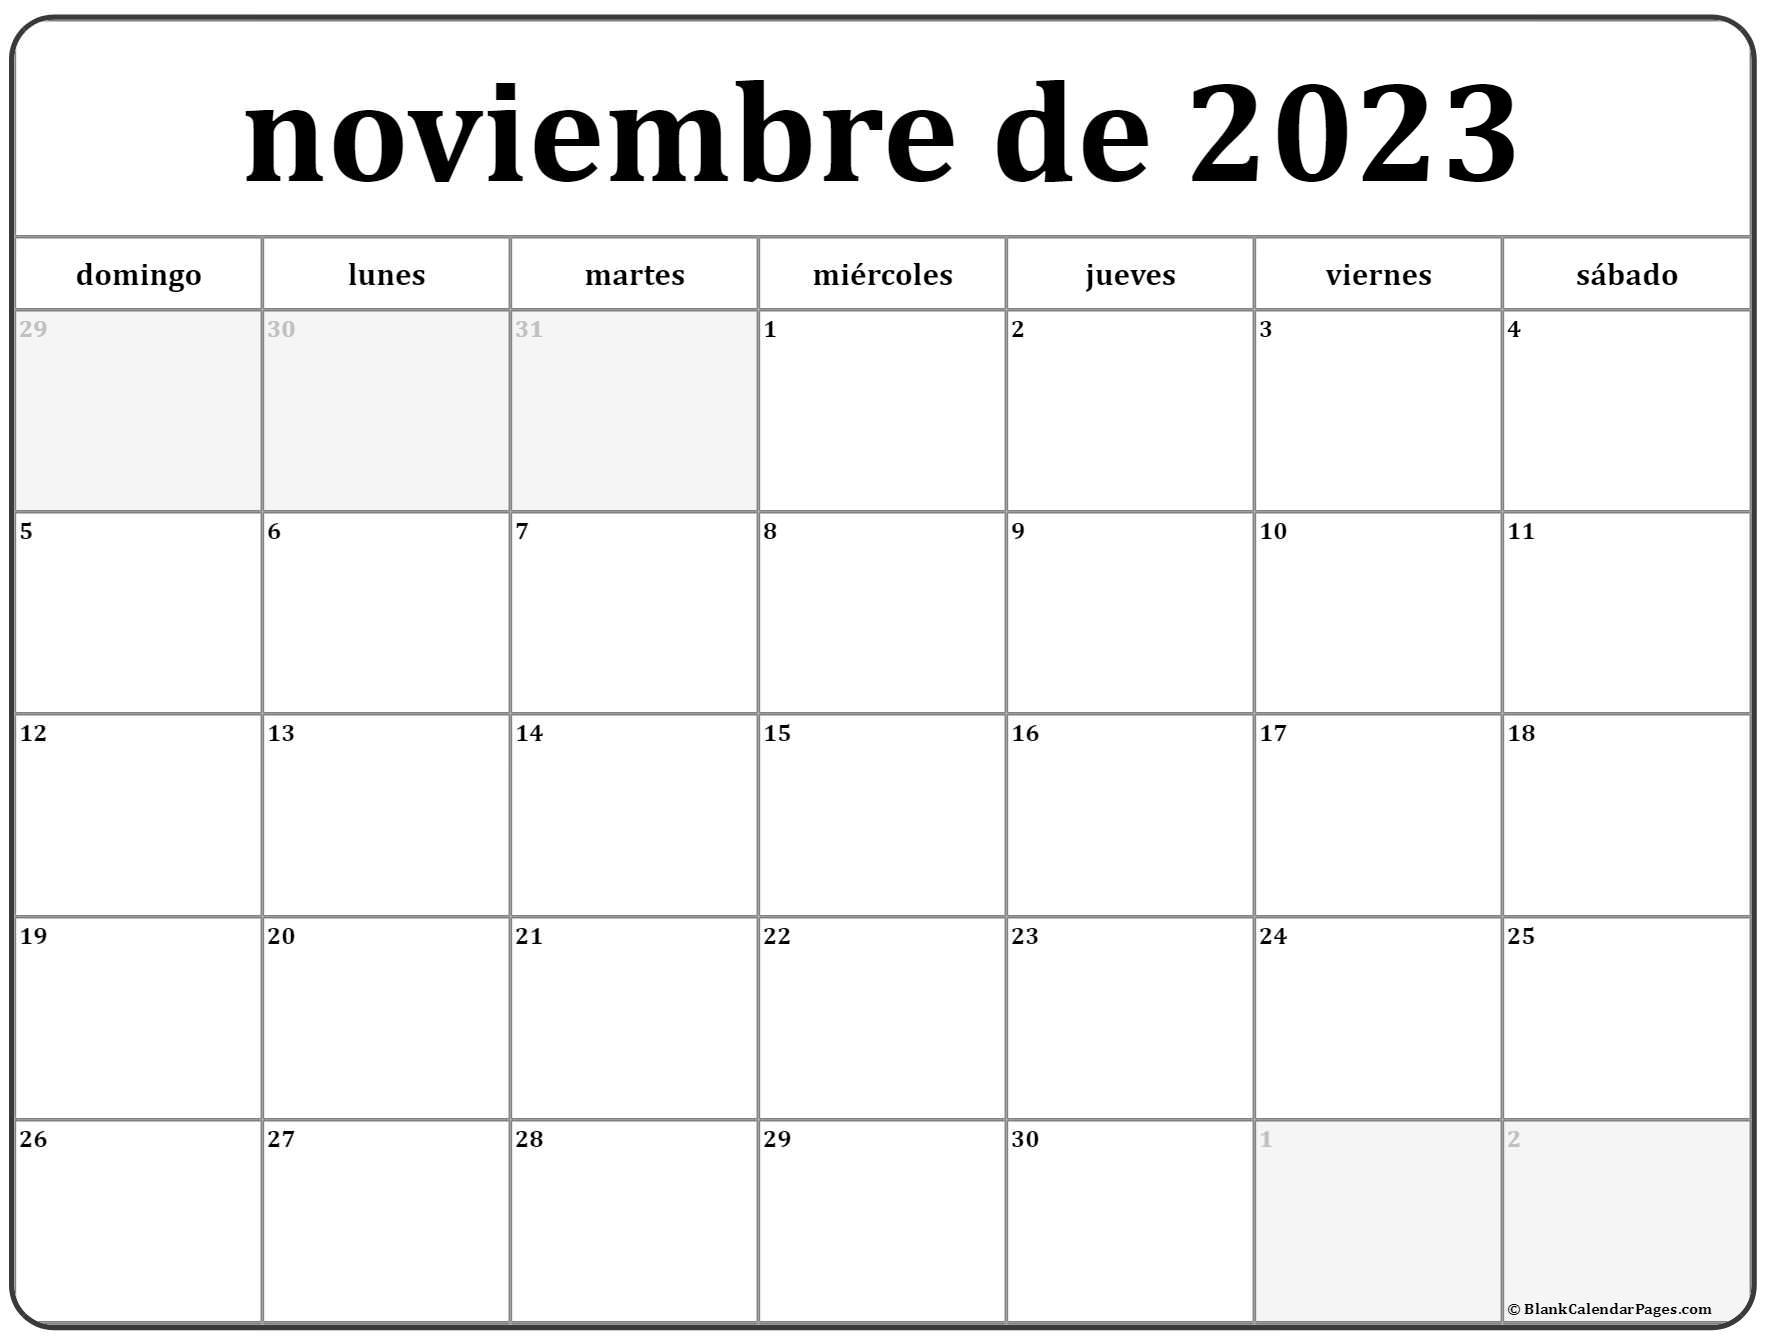 noviembre-de-2023-calendario-gratis-calendario-noviembre